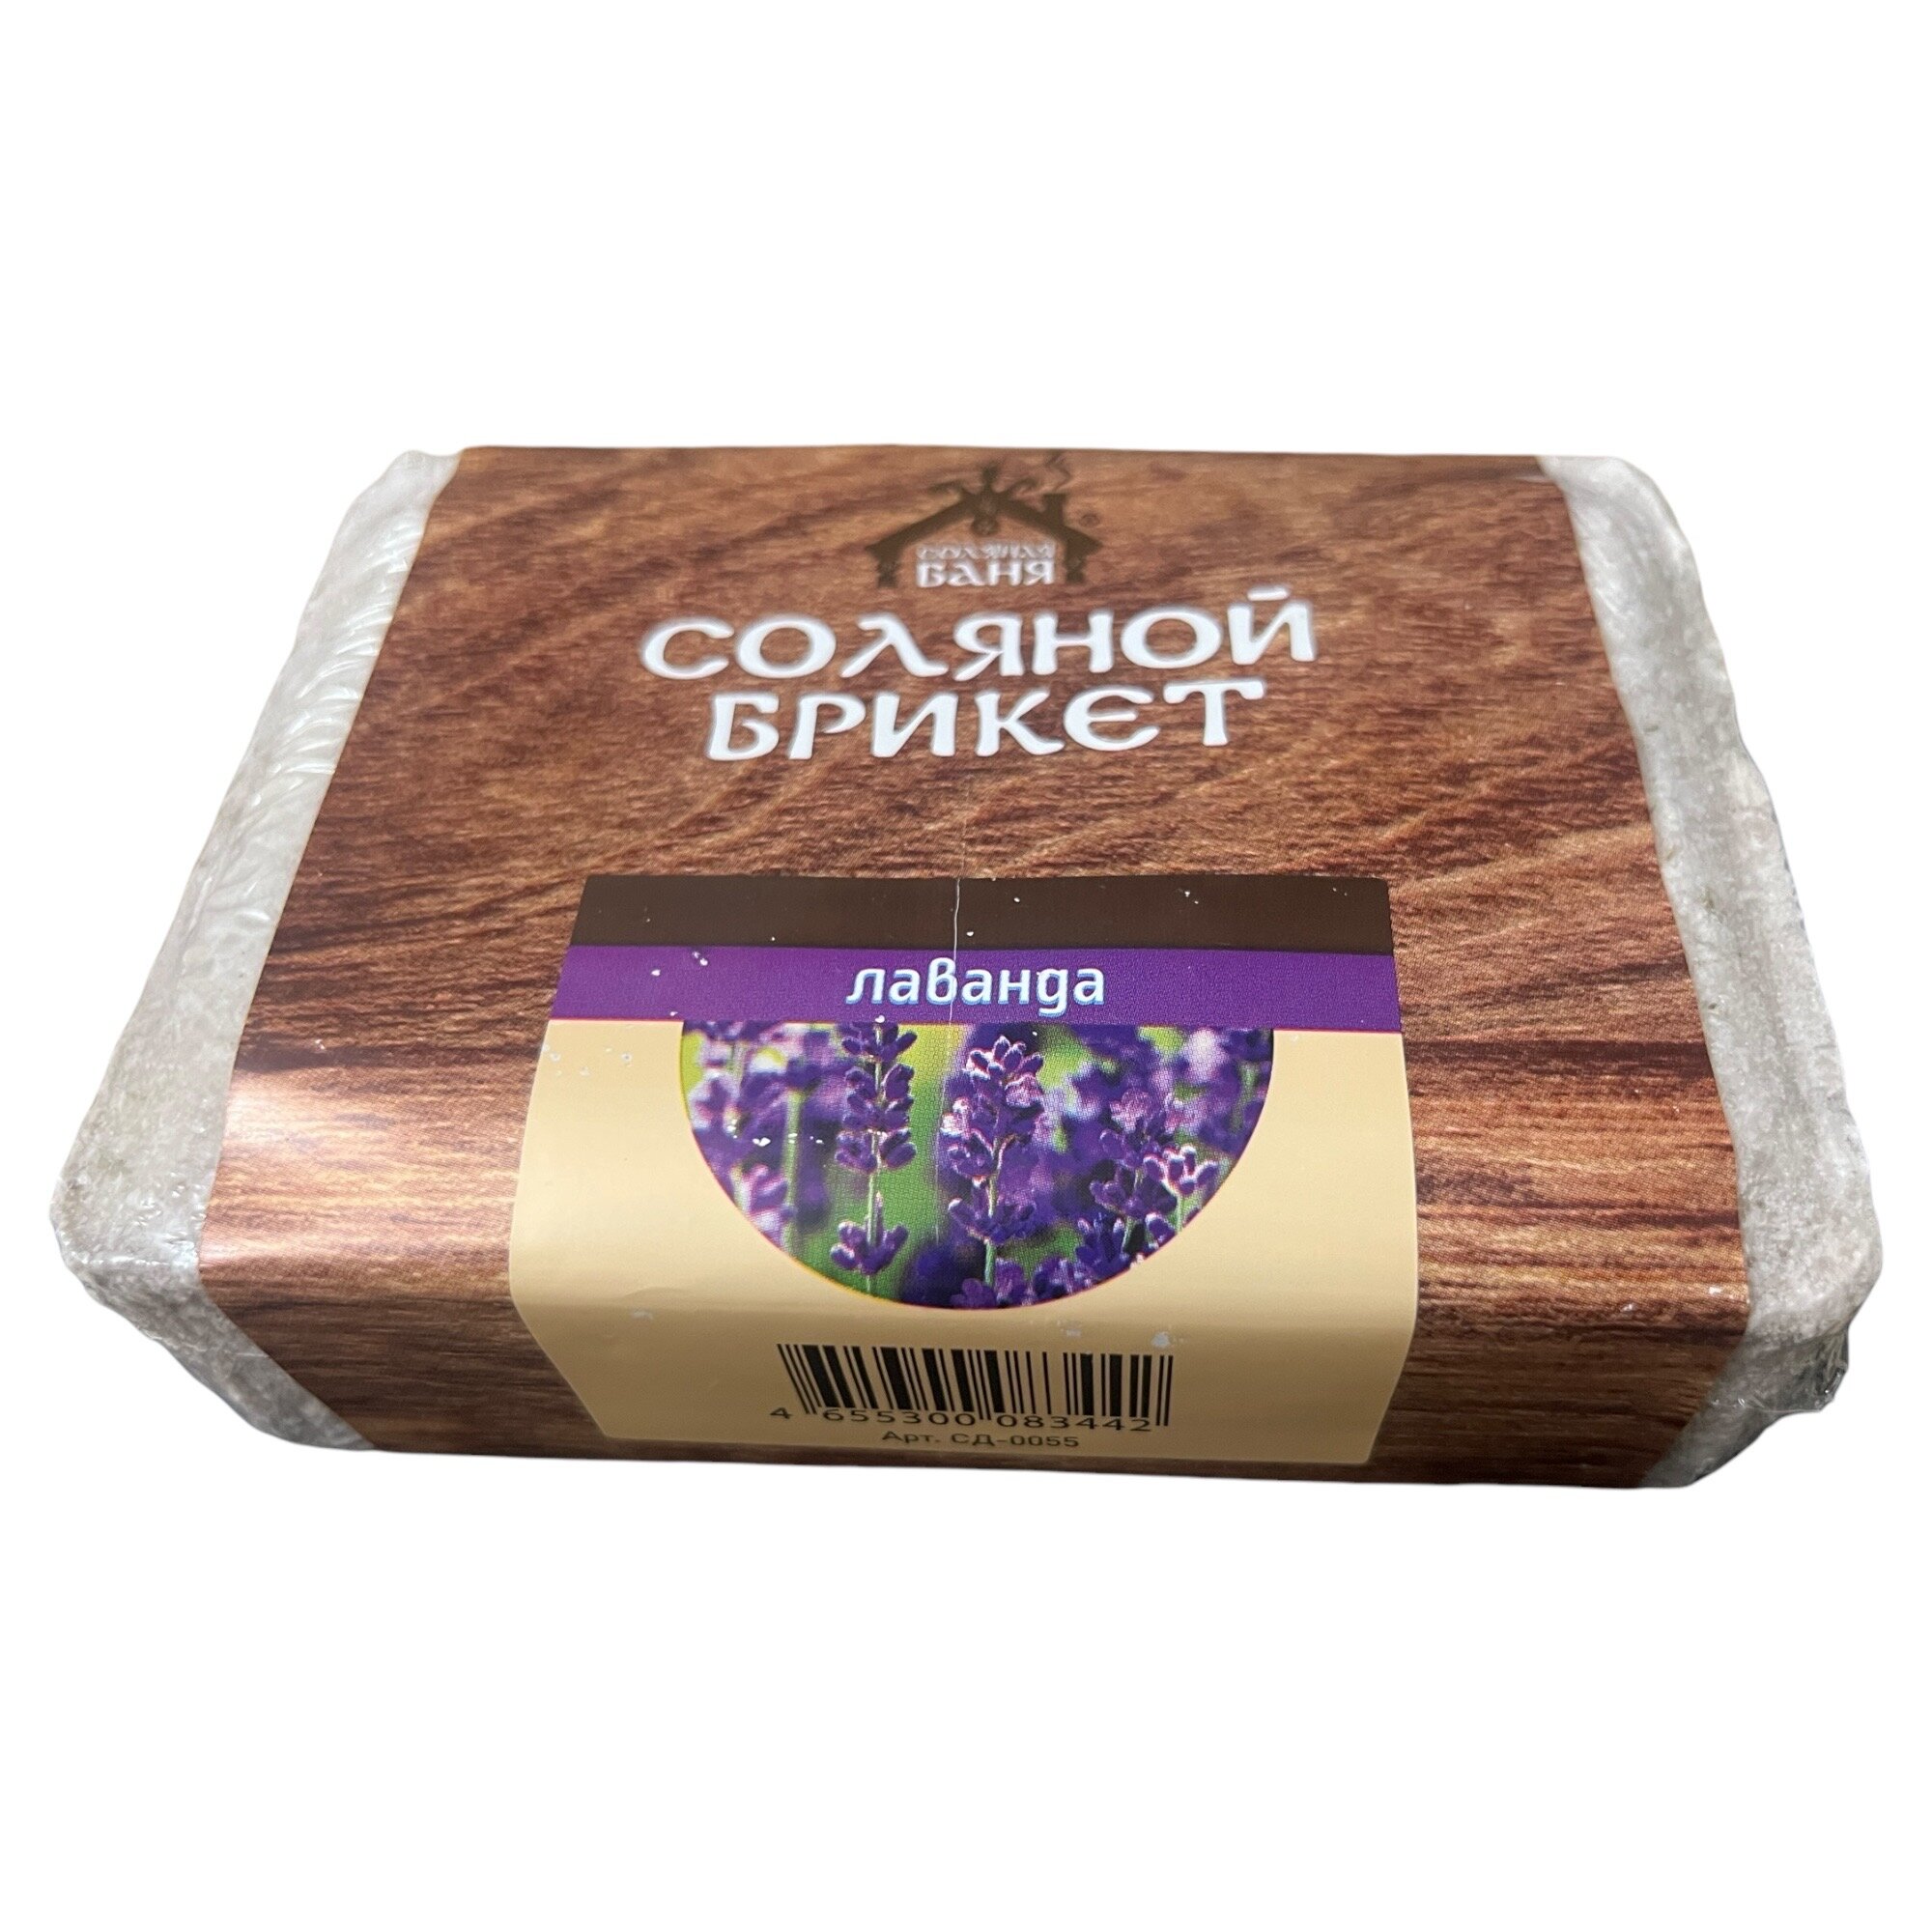 Соляной брикет "Соляная баня" с Алтайскими травами "Лаванда " 1,35 кг